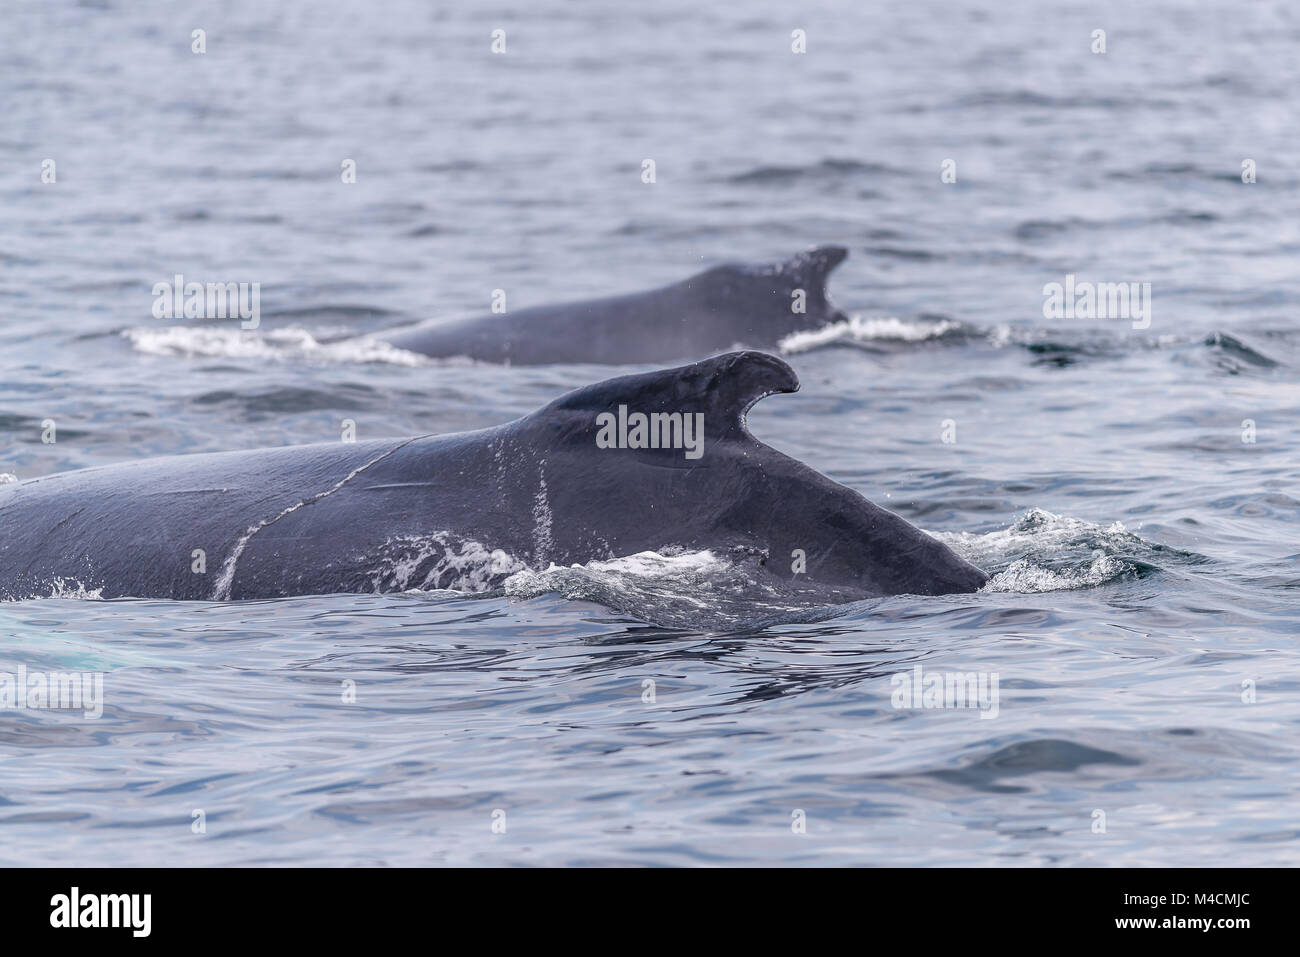 Les baleines dans le sanctuaire marin banc Stellwagen dans Massachusetts Banque D'Images